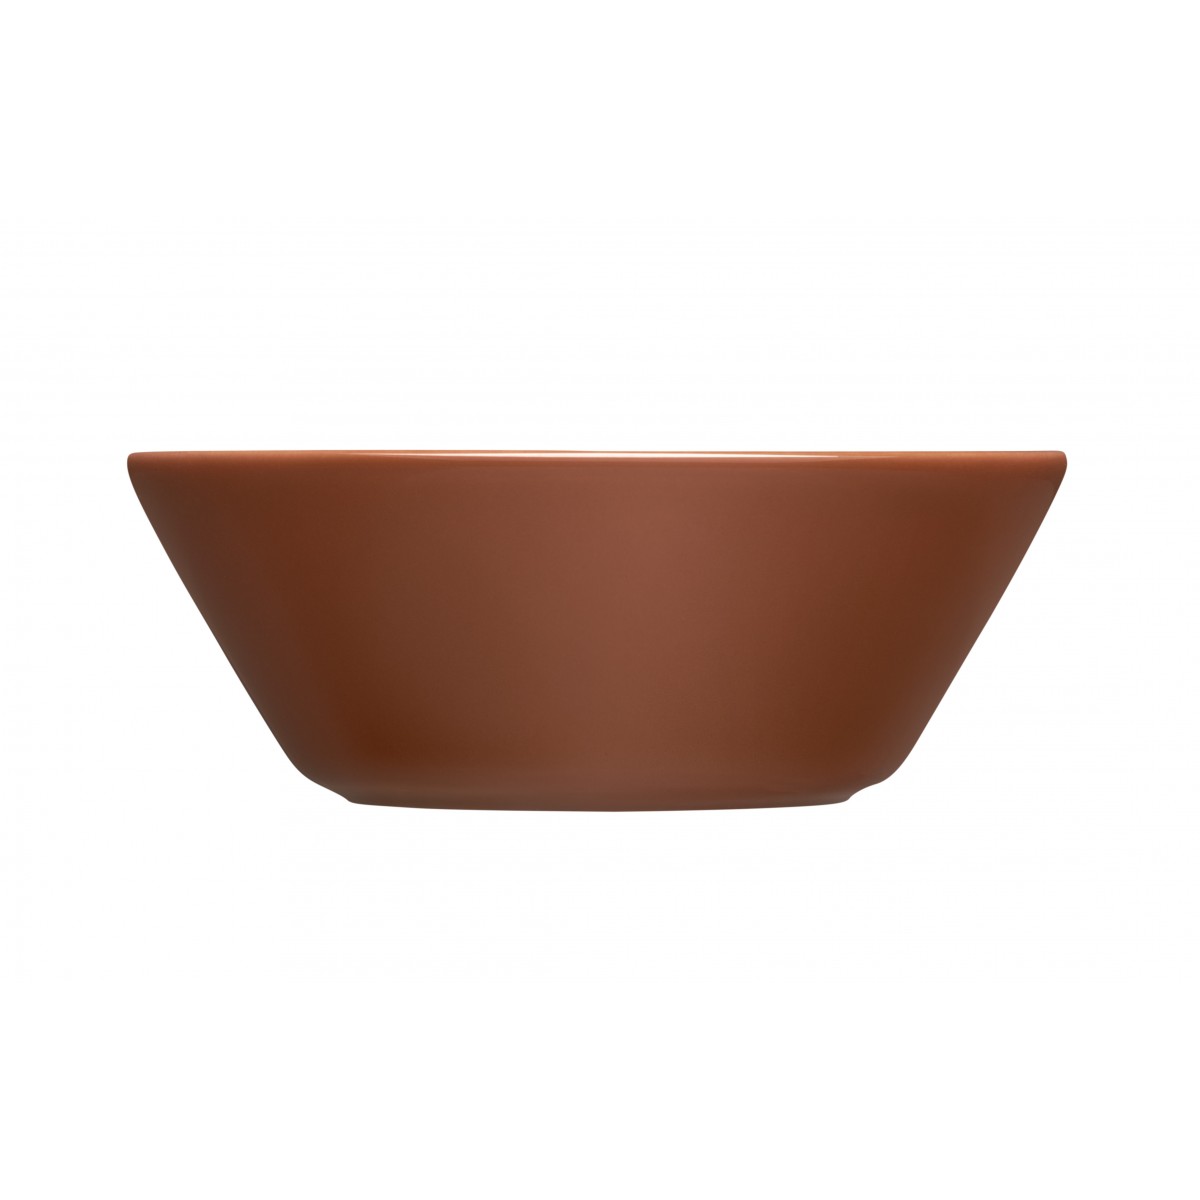 Ø15cm - Teema bowl - vintage brown - 1061241